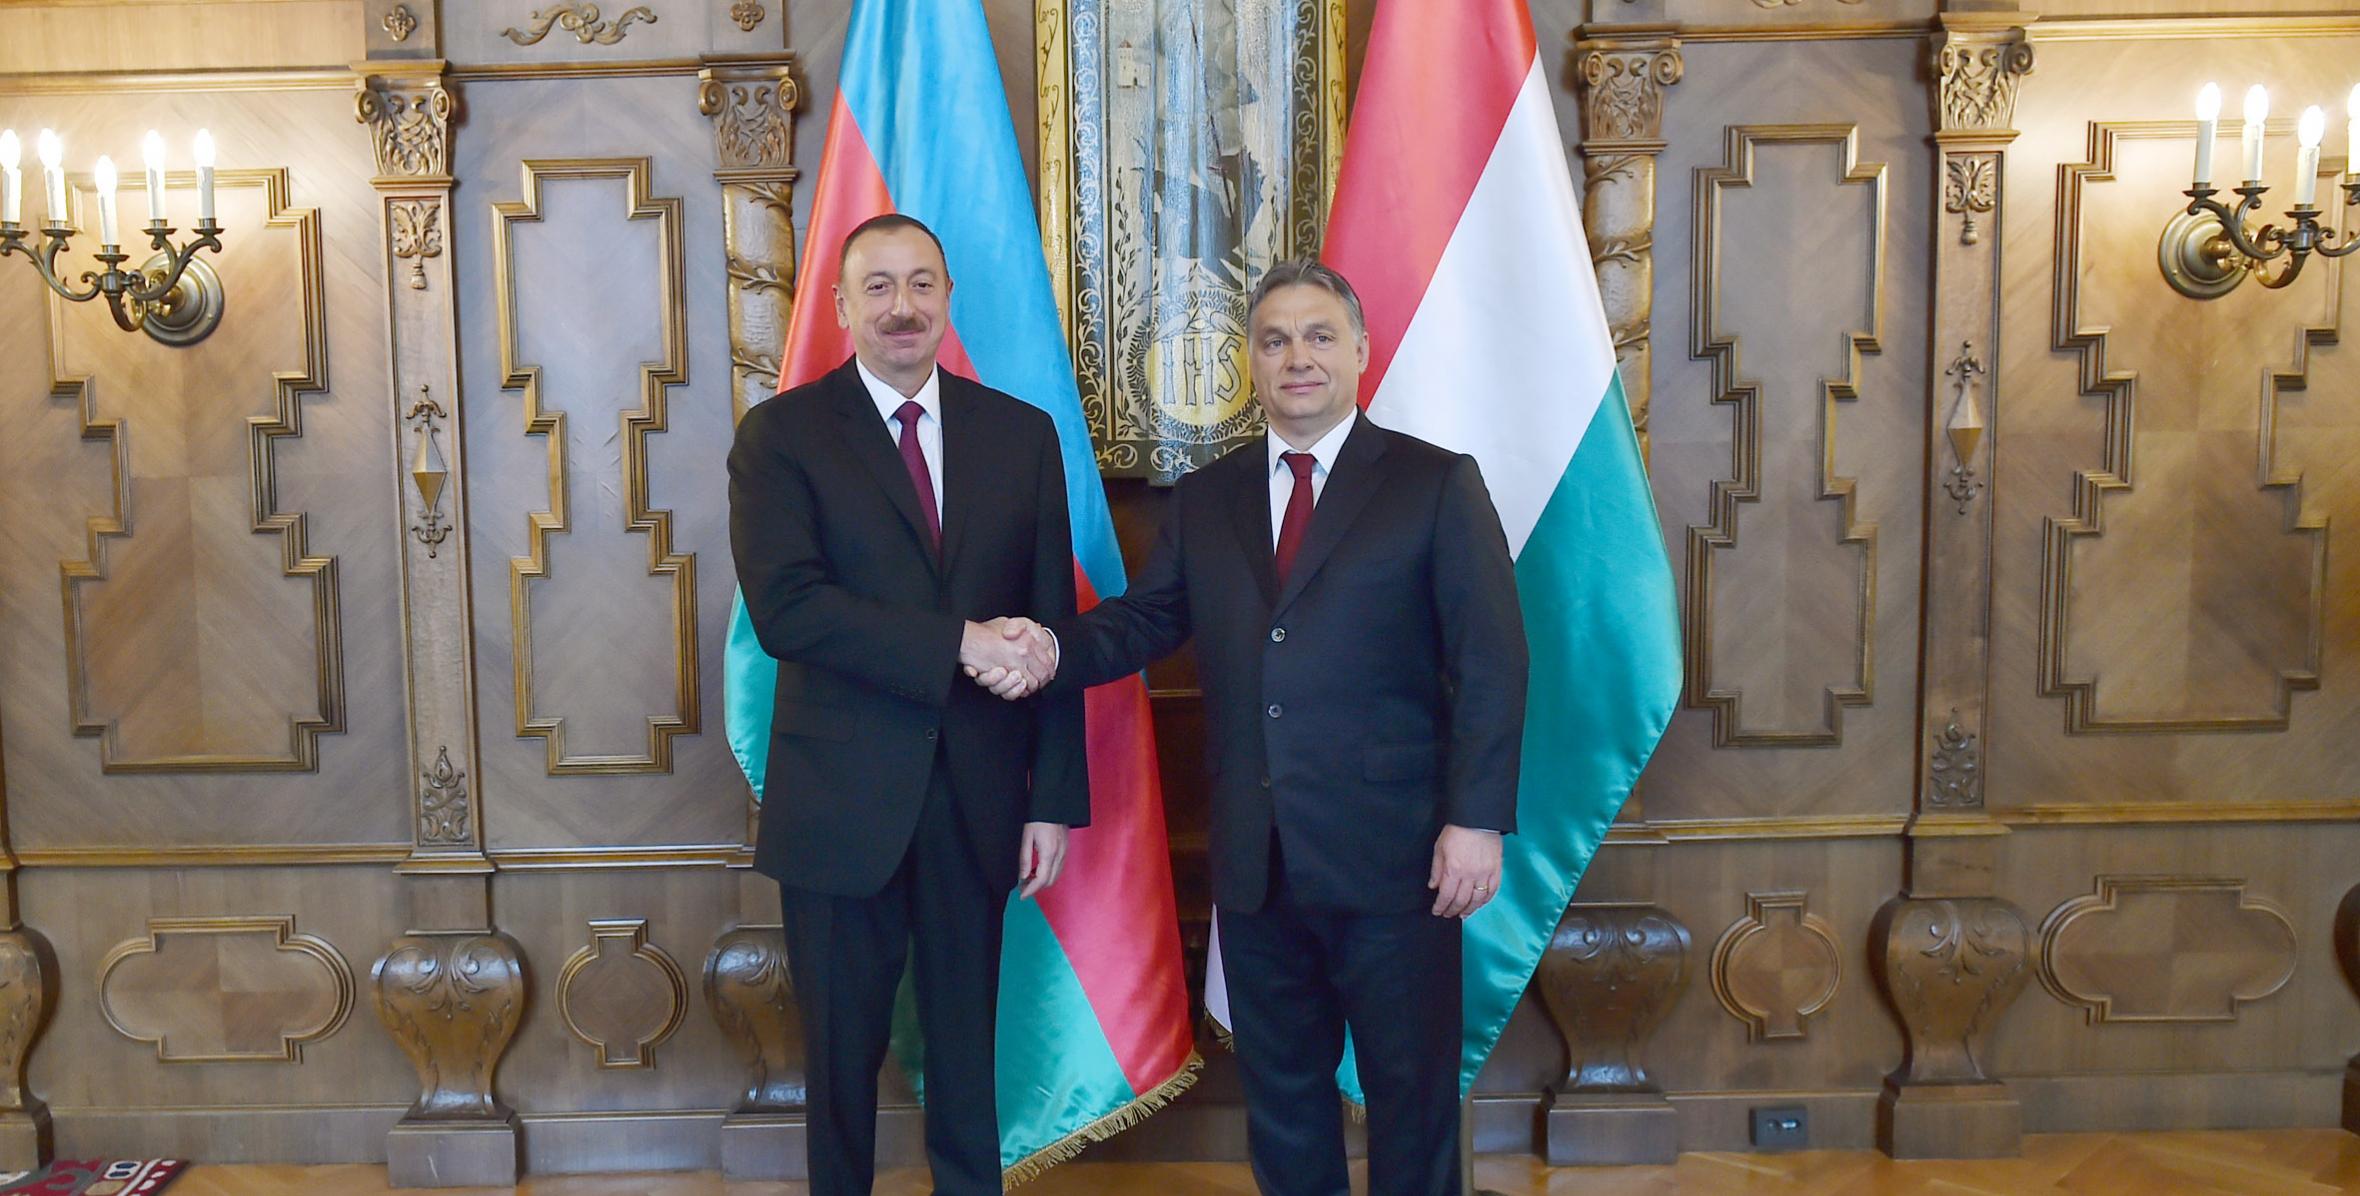 Состоялась встреча Ильхама Алиева и премьер-министра Венгрии Виктора Орбана в расширенном составе